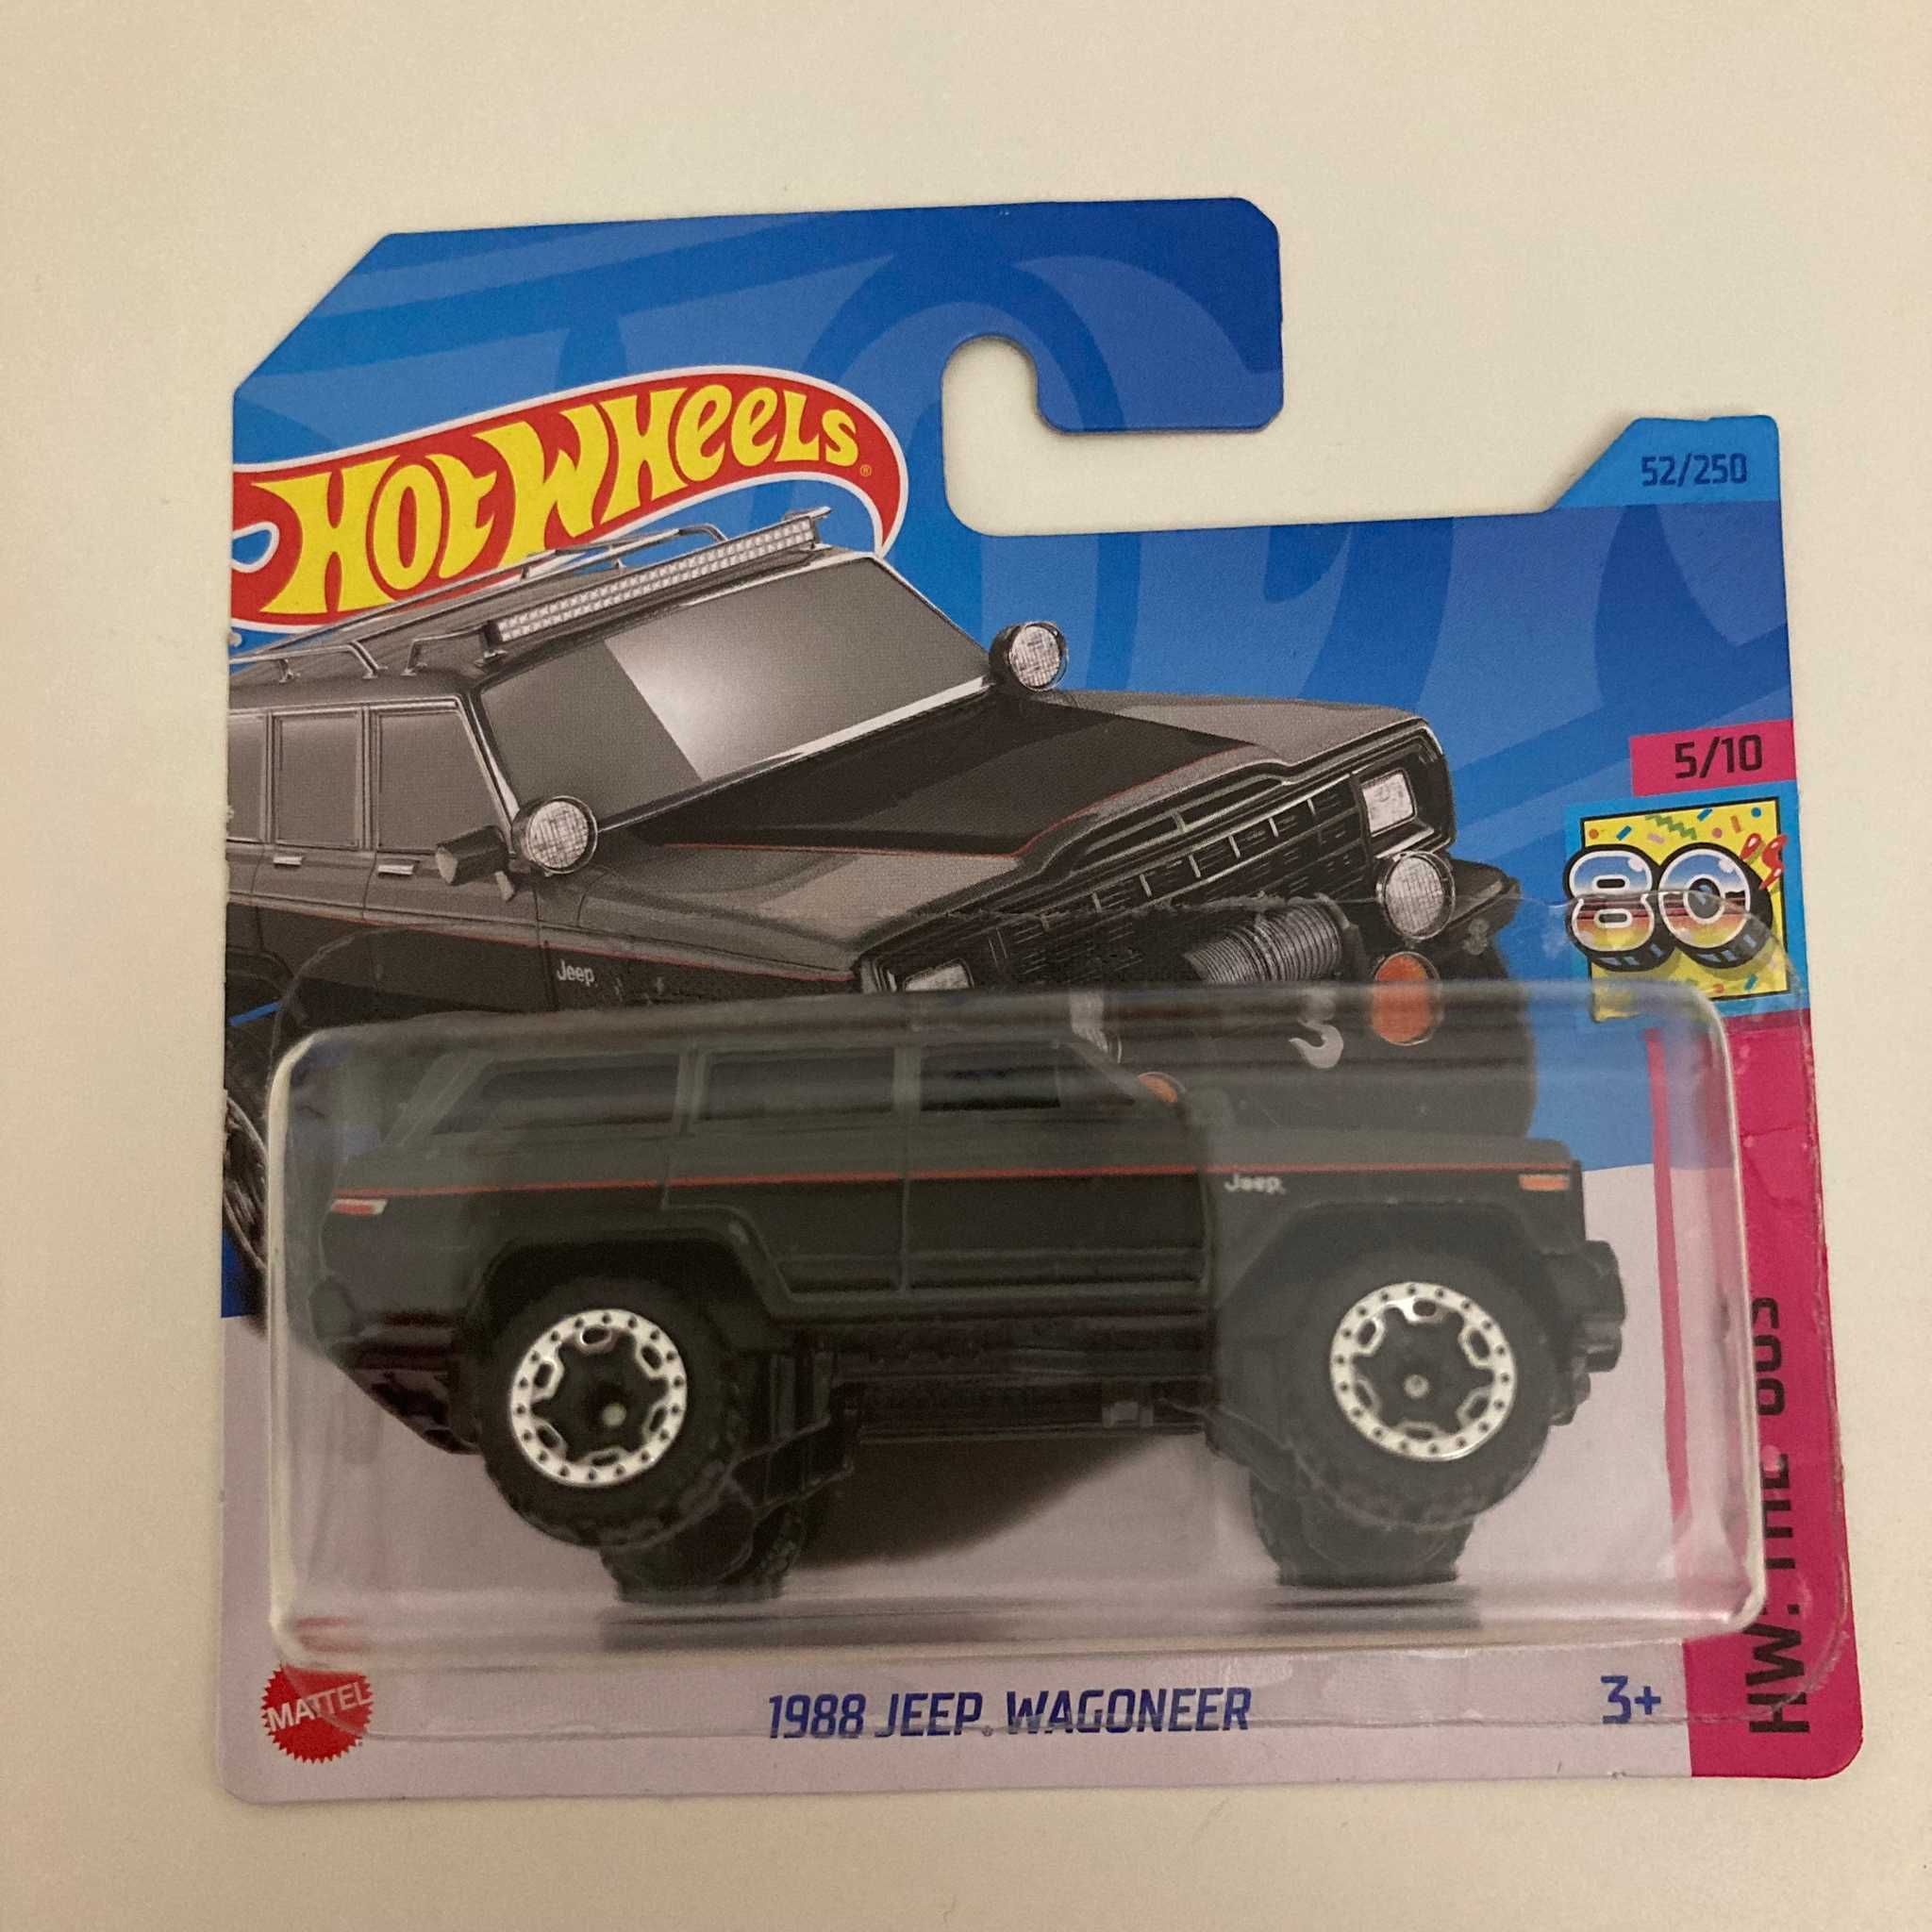 1988 Jeep Wagoneer (Hot Wheels)